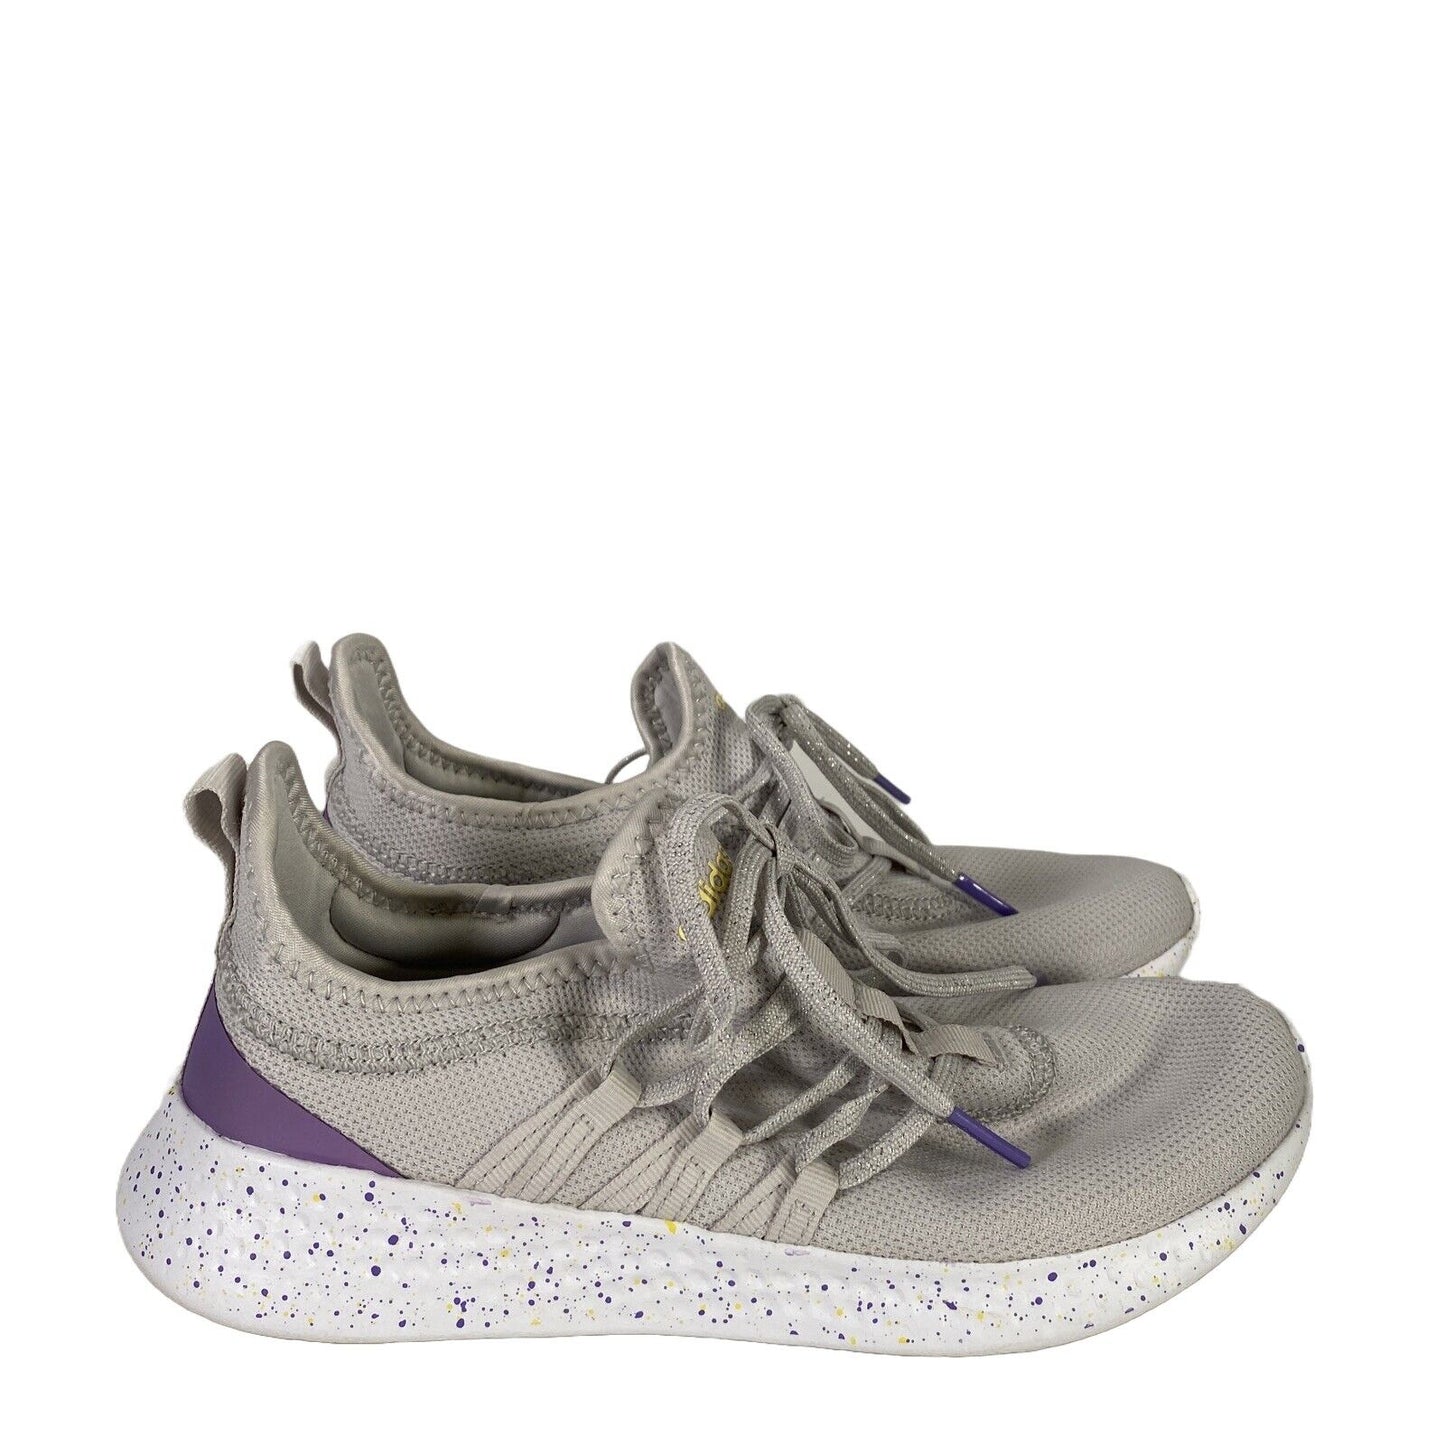 Adidas Women's Gray/Purple Lace Up Cloadfoam Walking Comfort Sneakers - 7